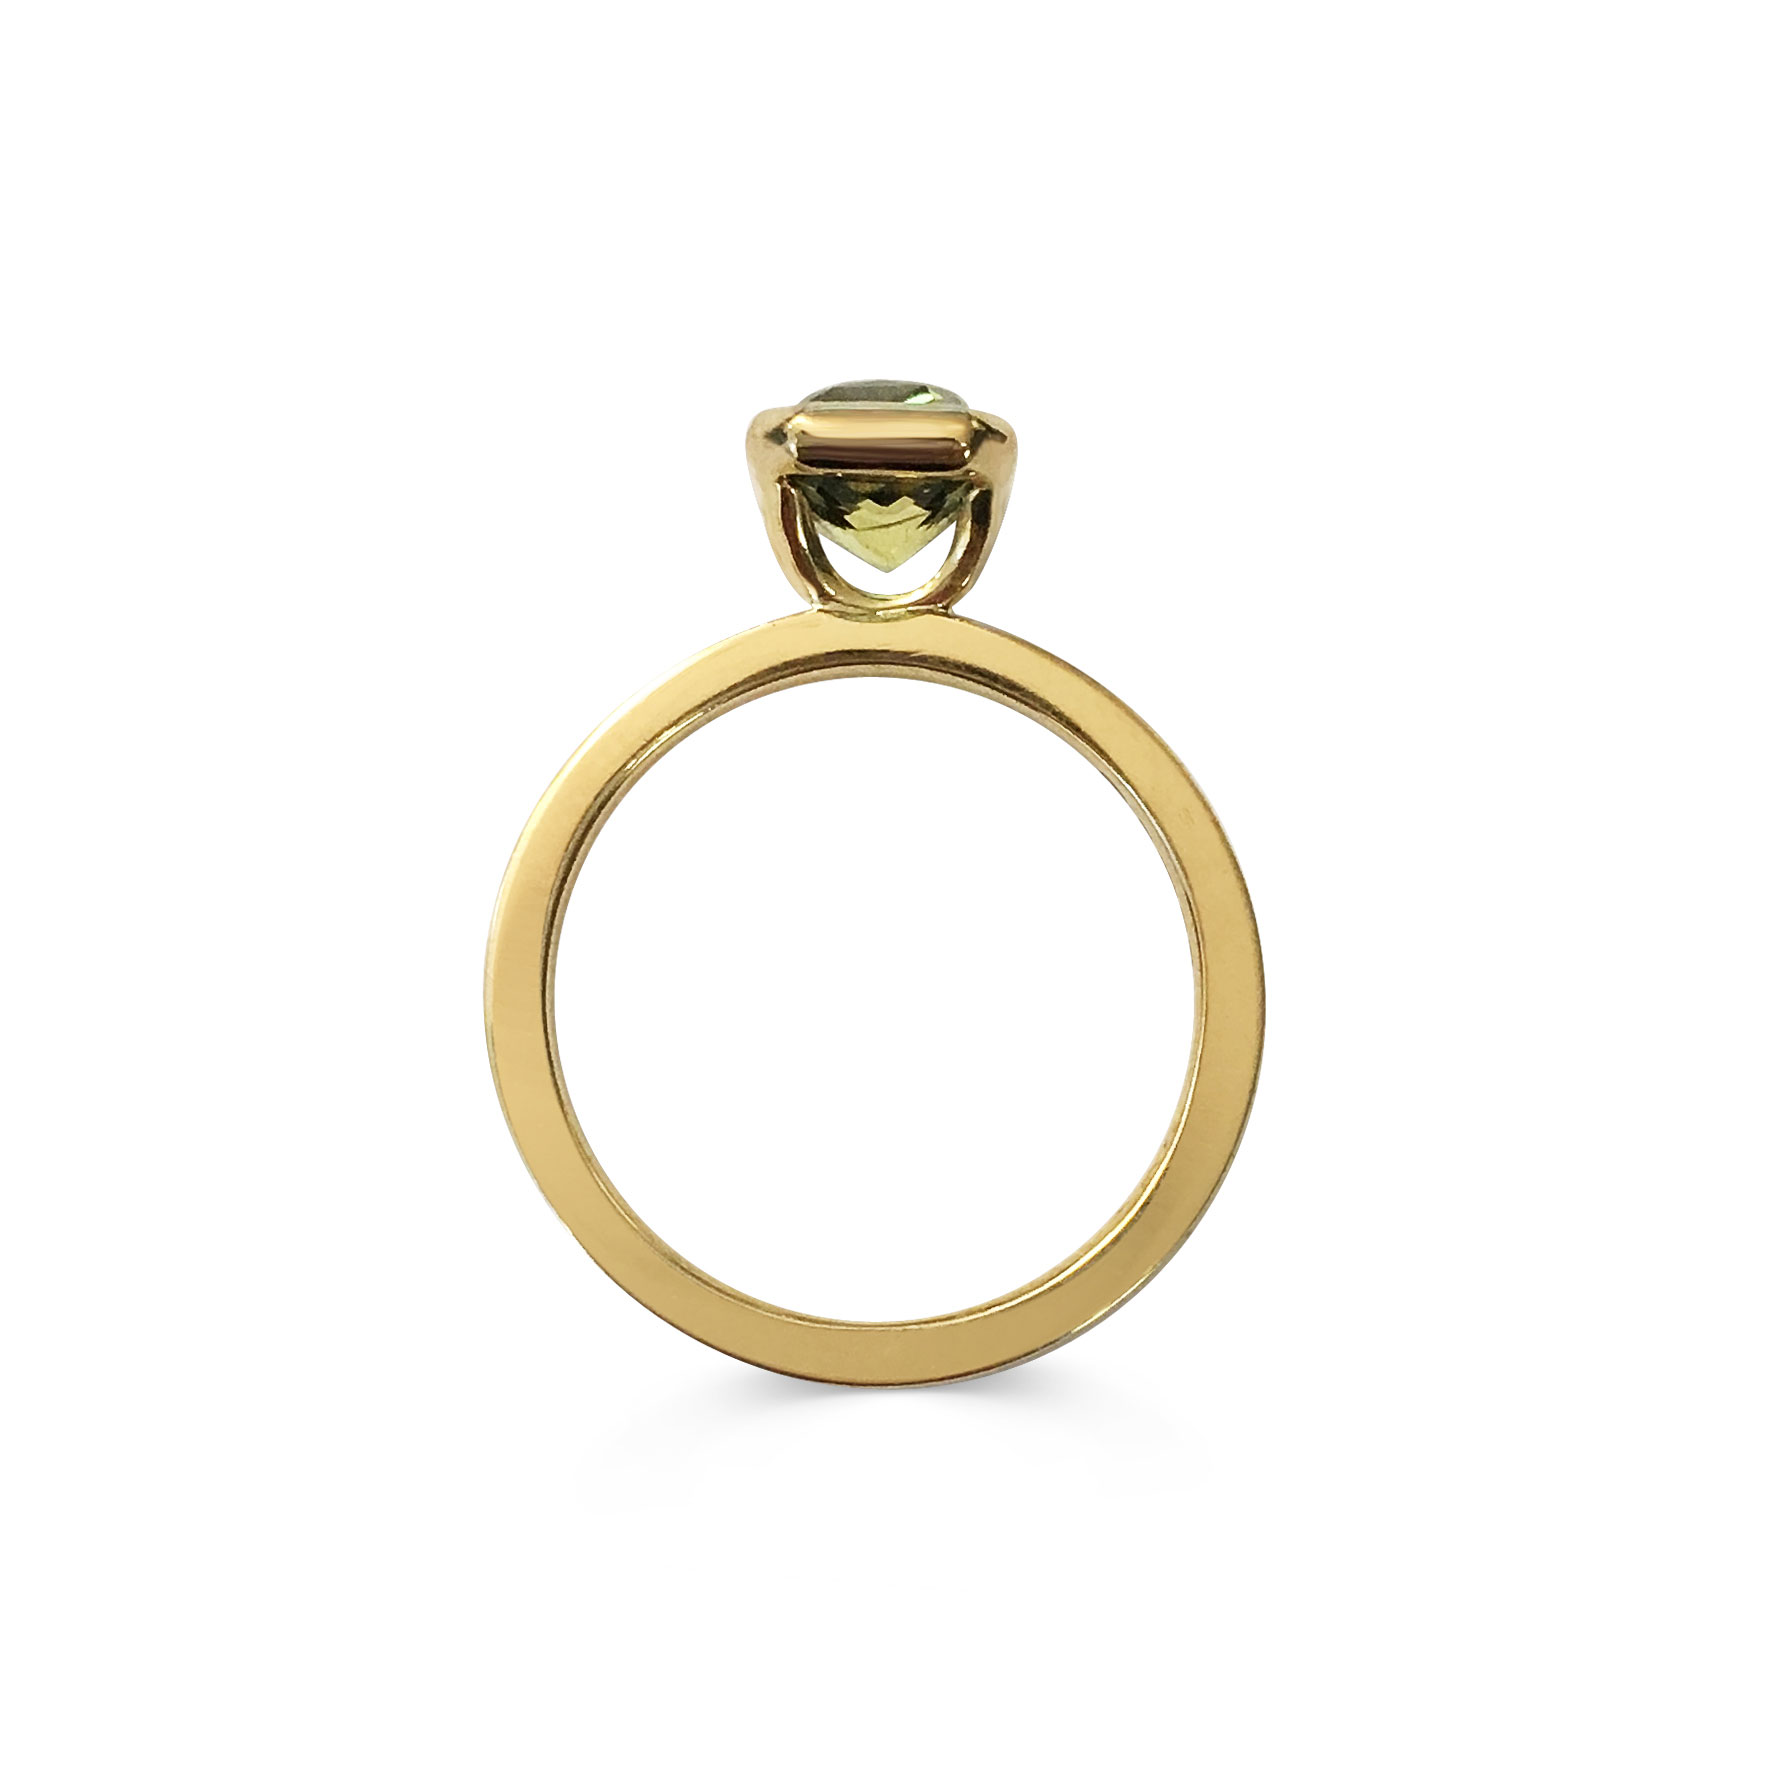 Emerald-cut parti sapphire ring